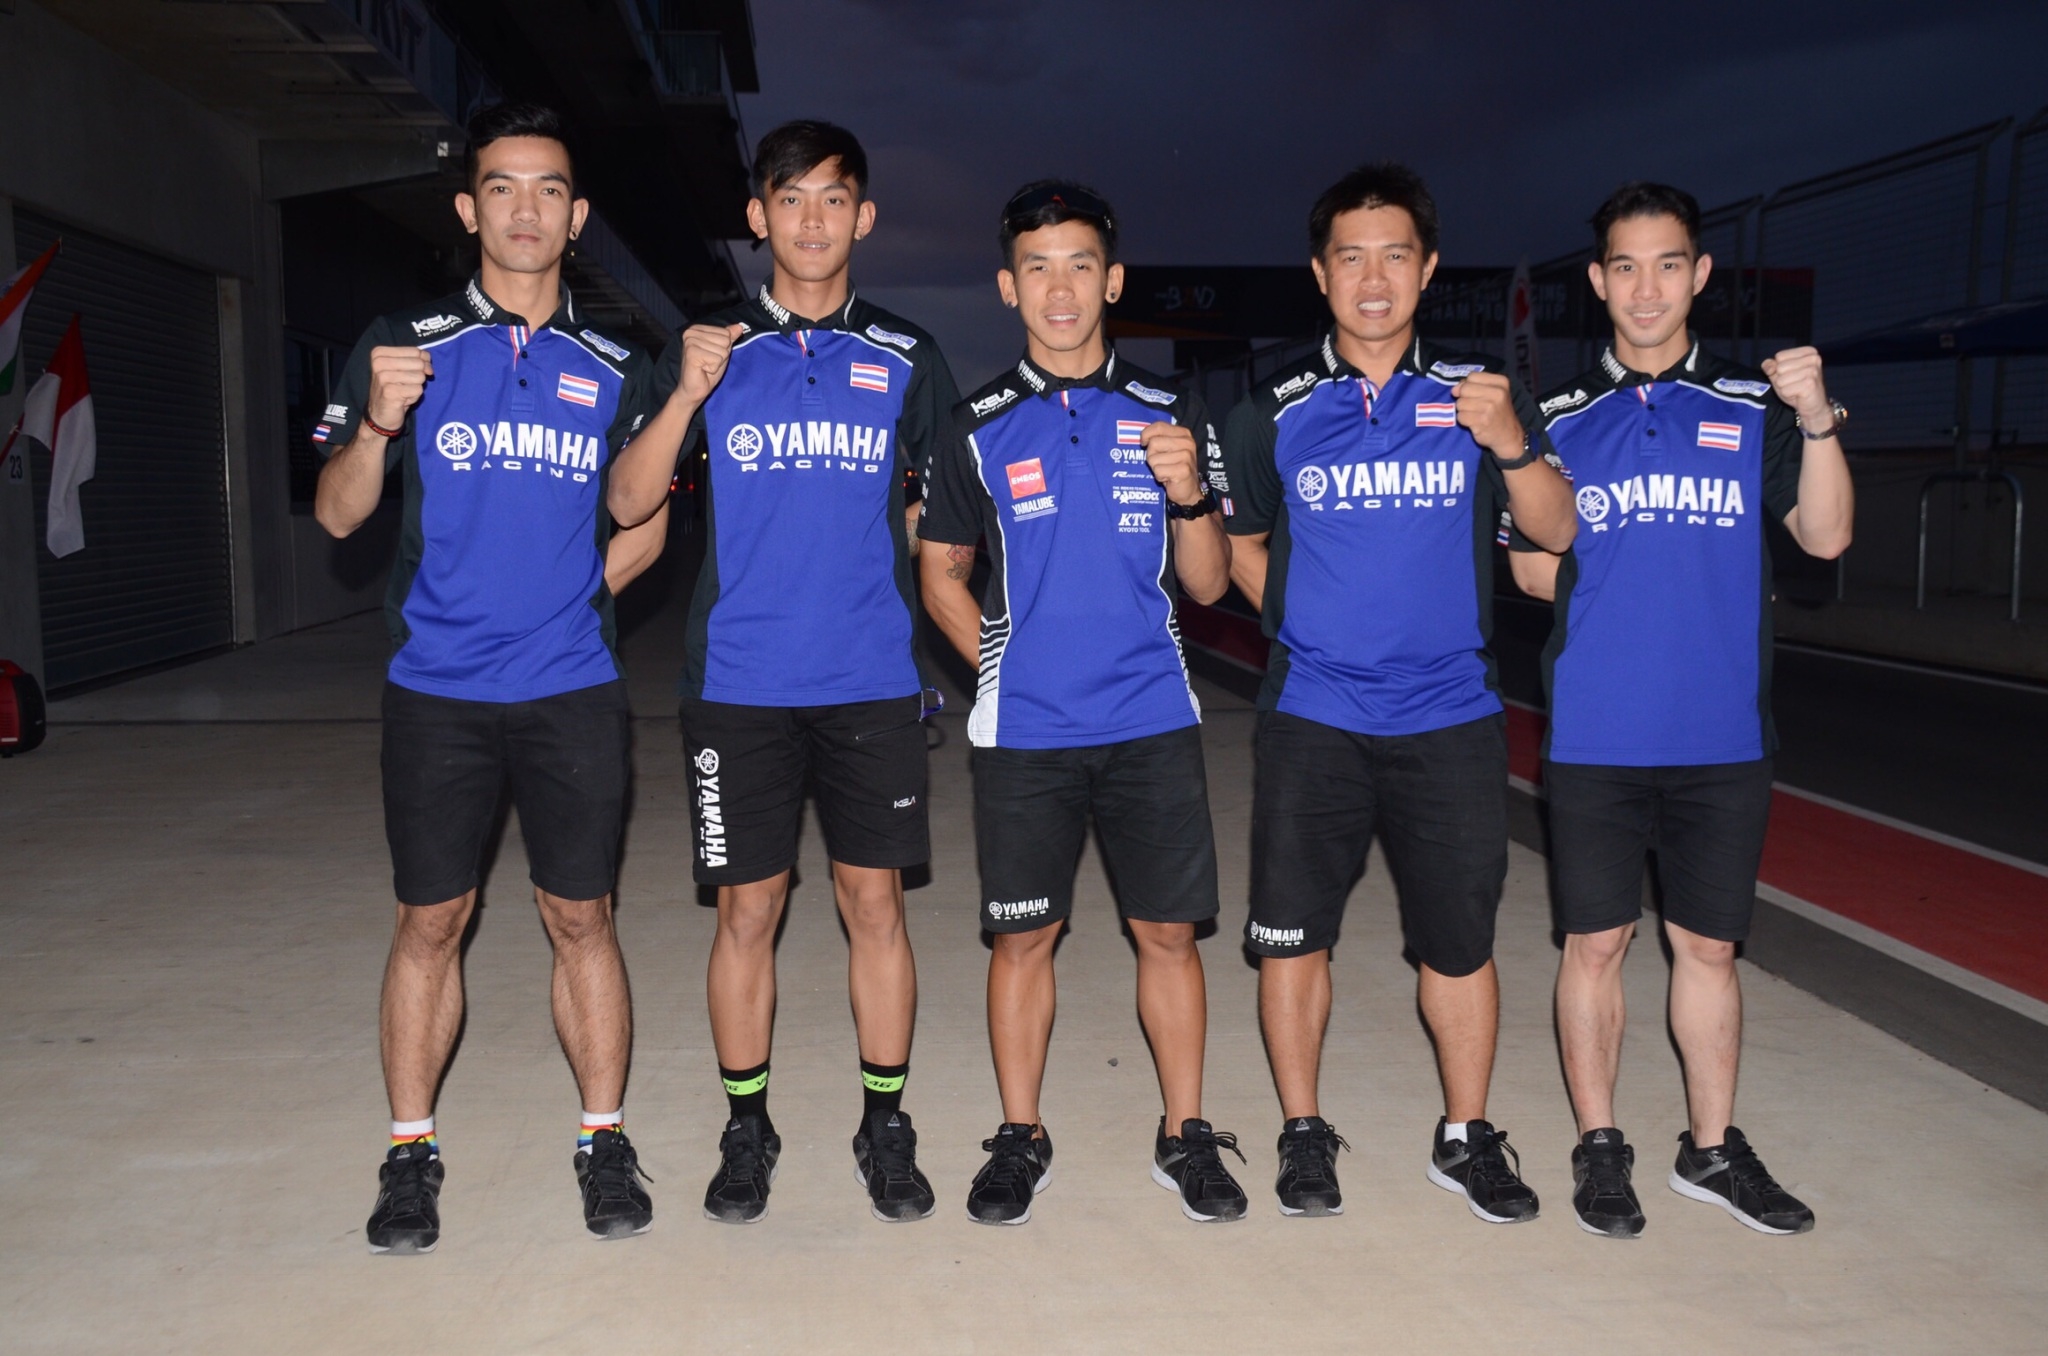 ขุนพลนักบิด ยามาฮ่า ไทยแลนด์ เรซซิ่งทีม ควอลิฟายดีสุดของนักแข่งไทย พร้อมไล่ล่าแชมป์ ศึกชิงแชมป์เอเชียสนาม 2 ที่ออสเตรเลีย